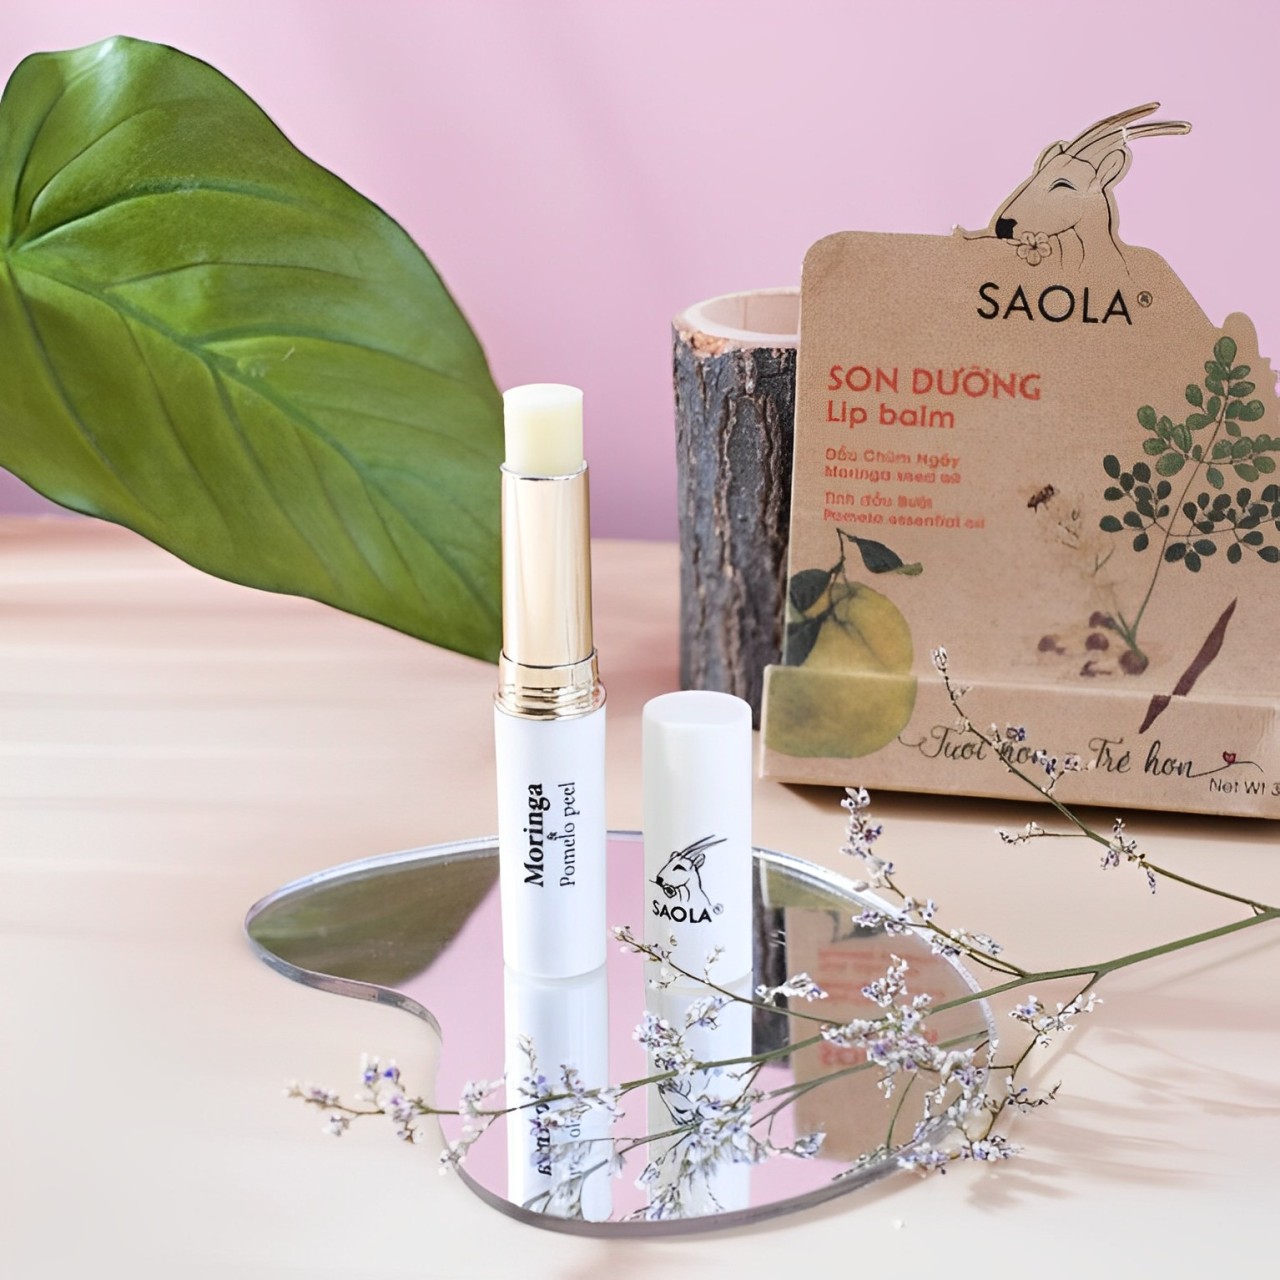 Son dưỡng môi tự nhiên hương Bưởi thương hiệu Sao la(3g) - Dưỡng ẩm môi, làm môi mềm, tươi hồng